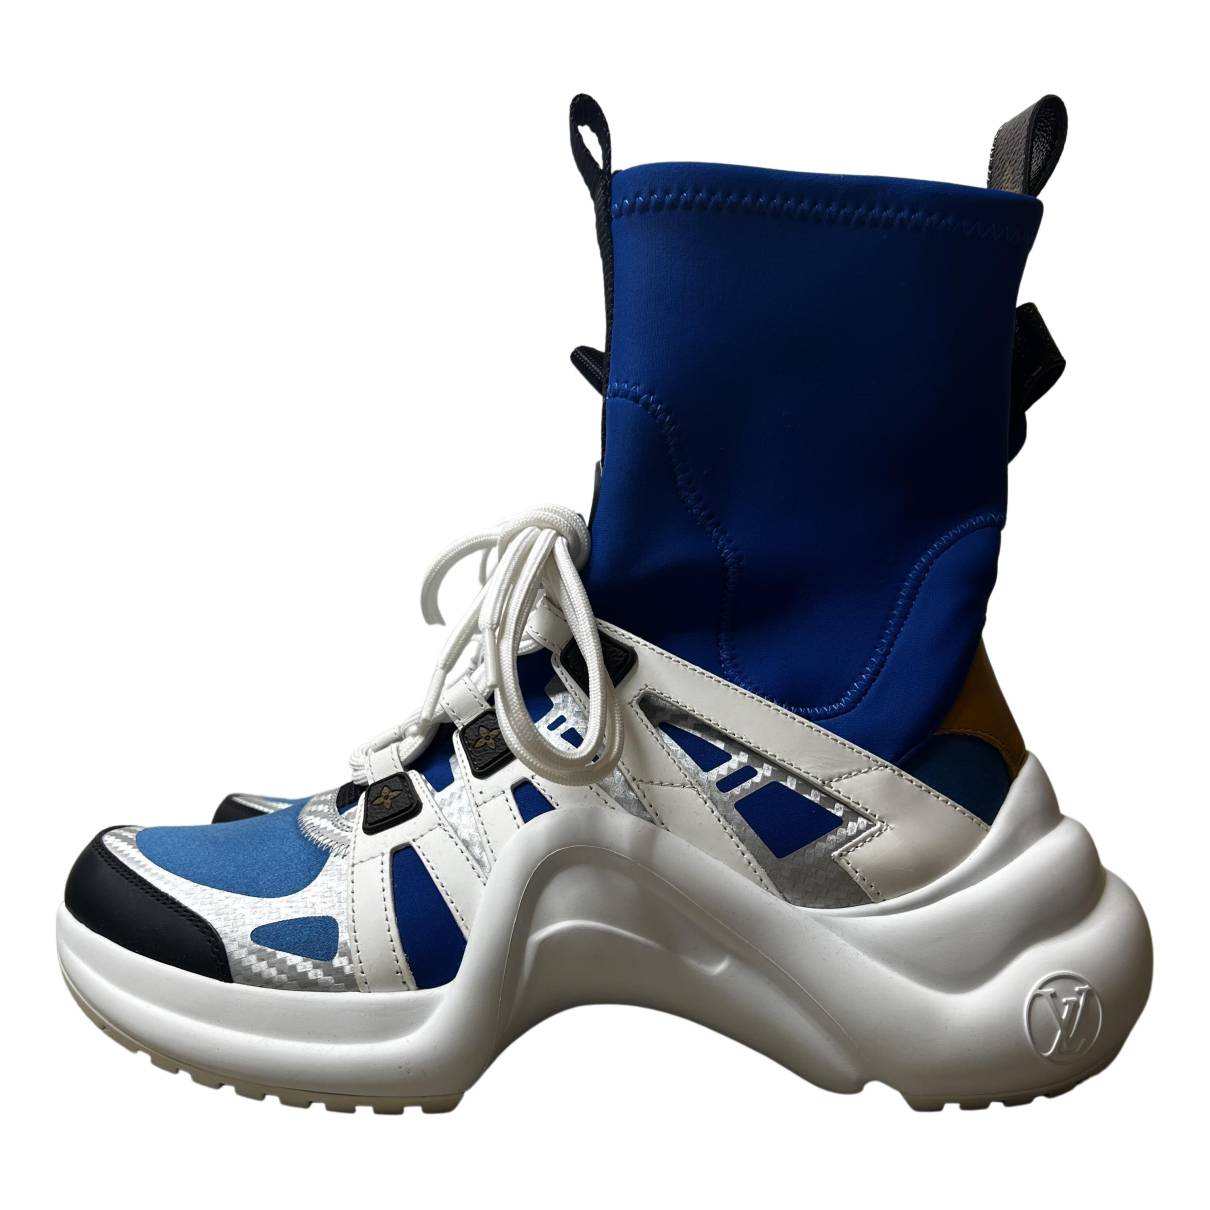 LV Archlight Trainer - Shoes, LOUIS VUITTON